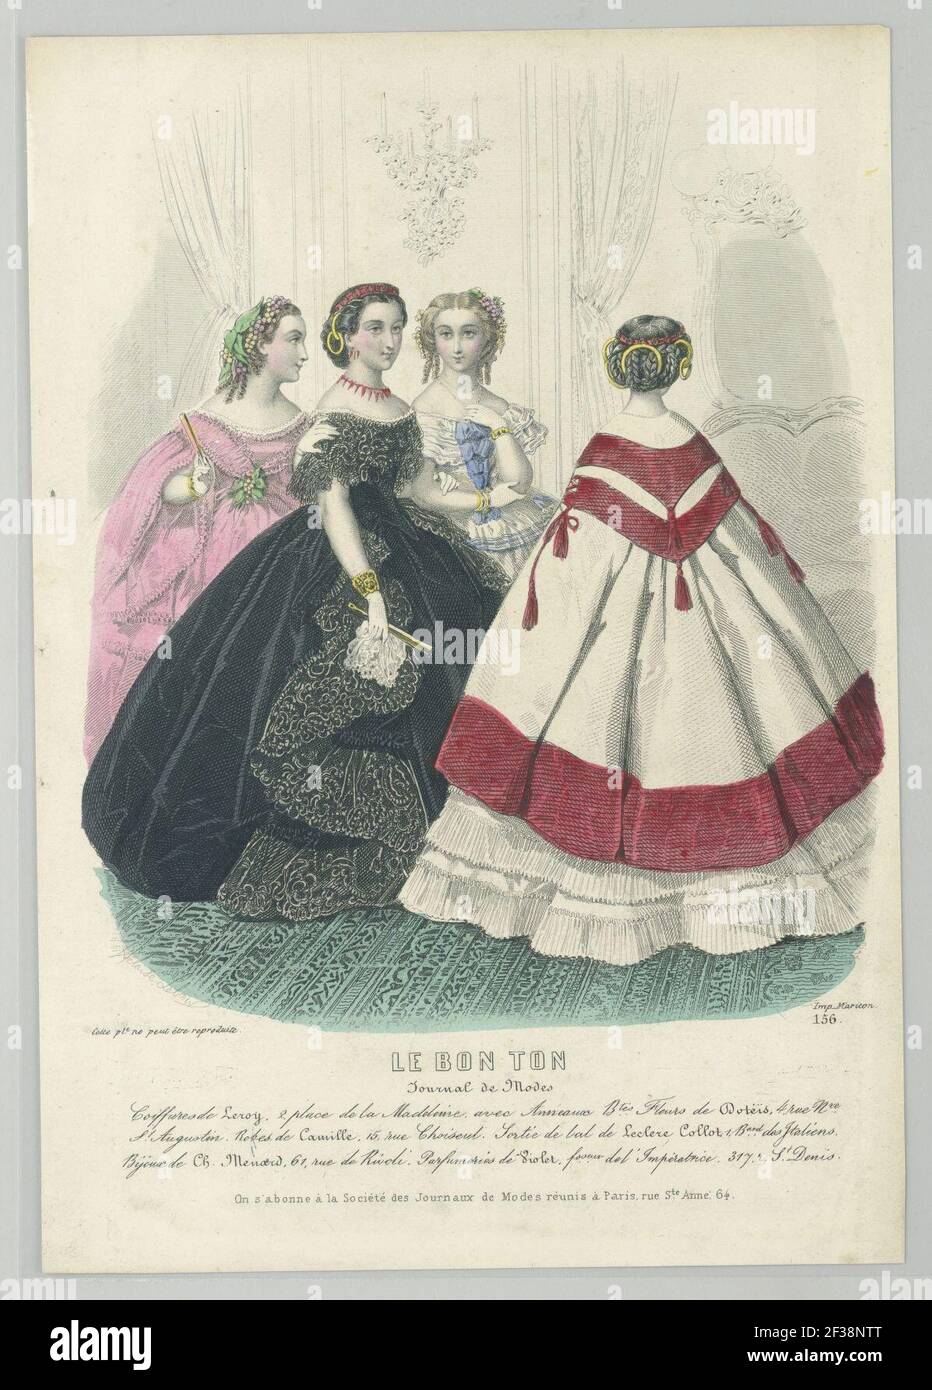 Print, 1859 Stock Photo